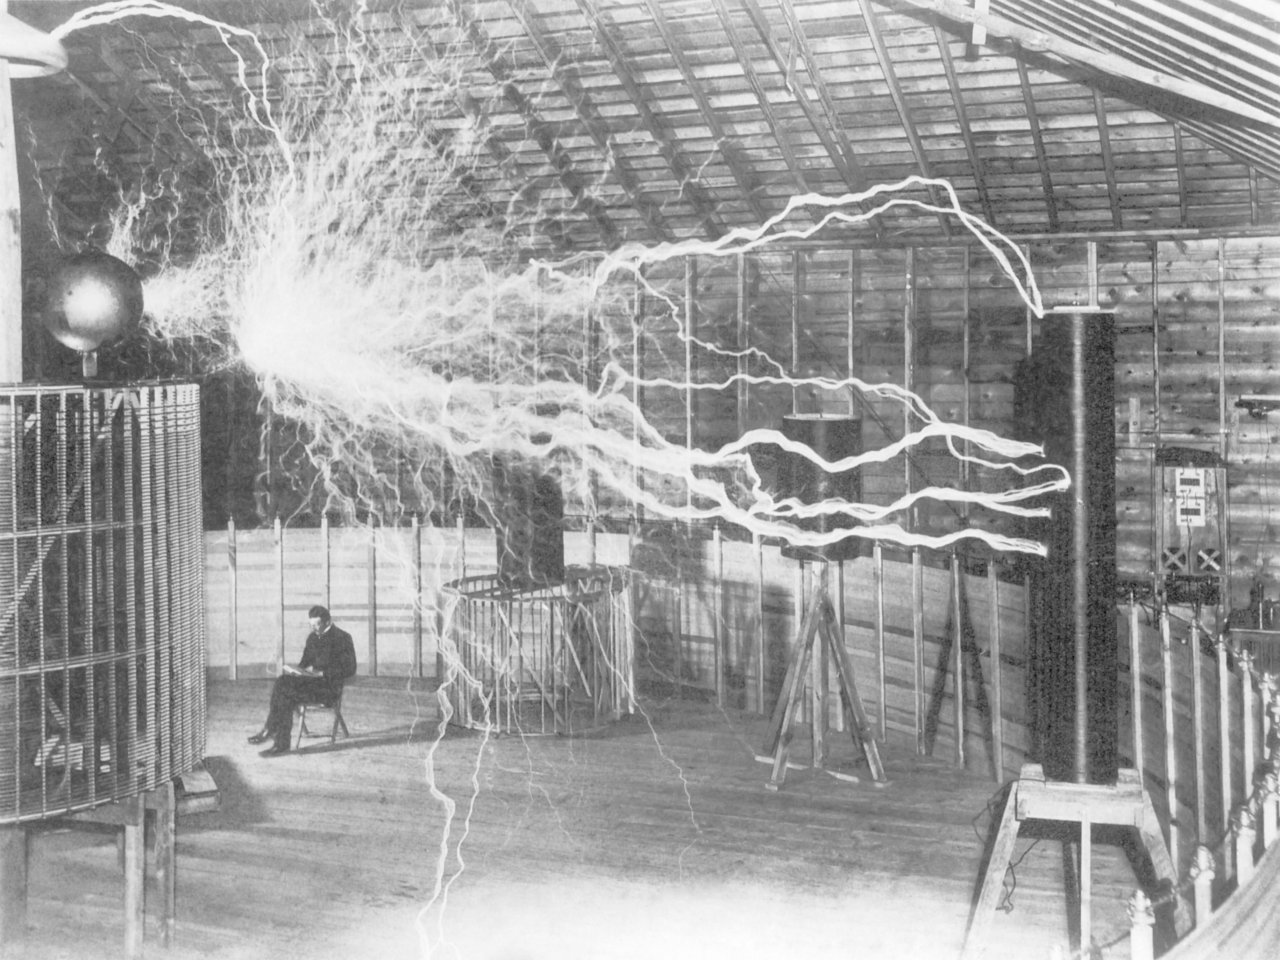 Um die Jahrhundertwende erlangte Nikola Tesla mit seinen Elektrizitätsvorführungen einige Berühmtheit. 